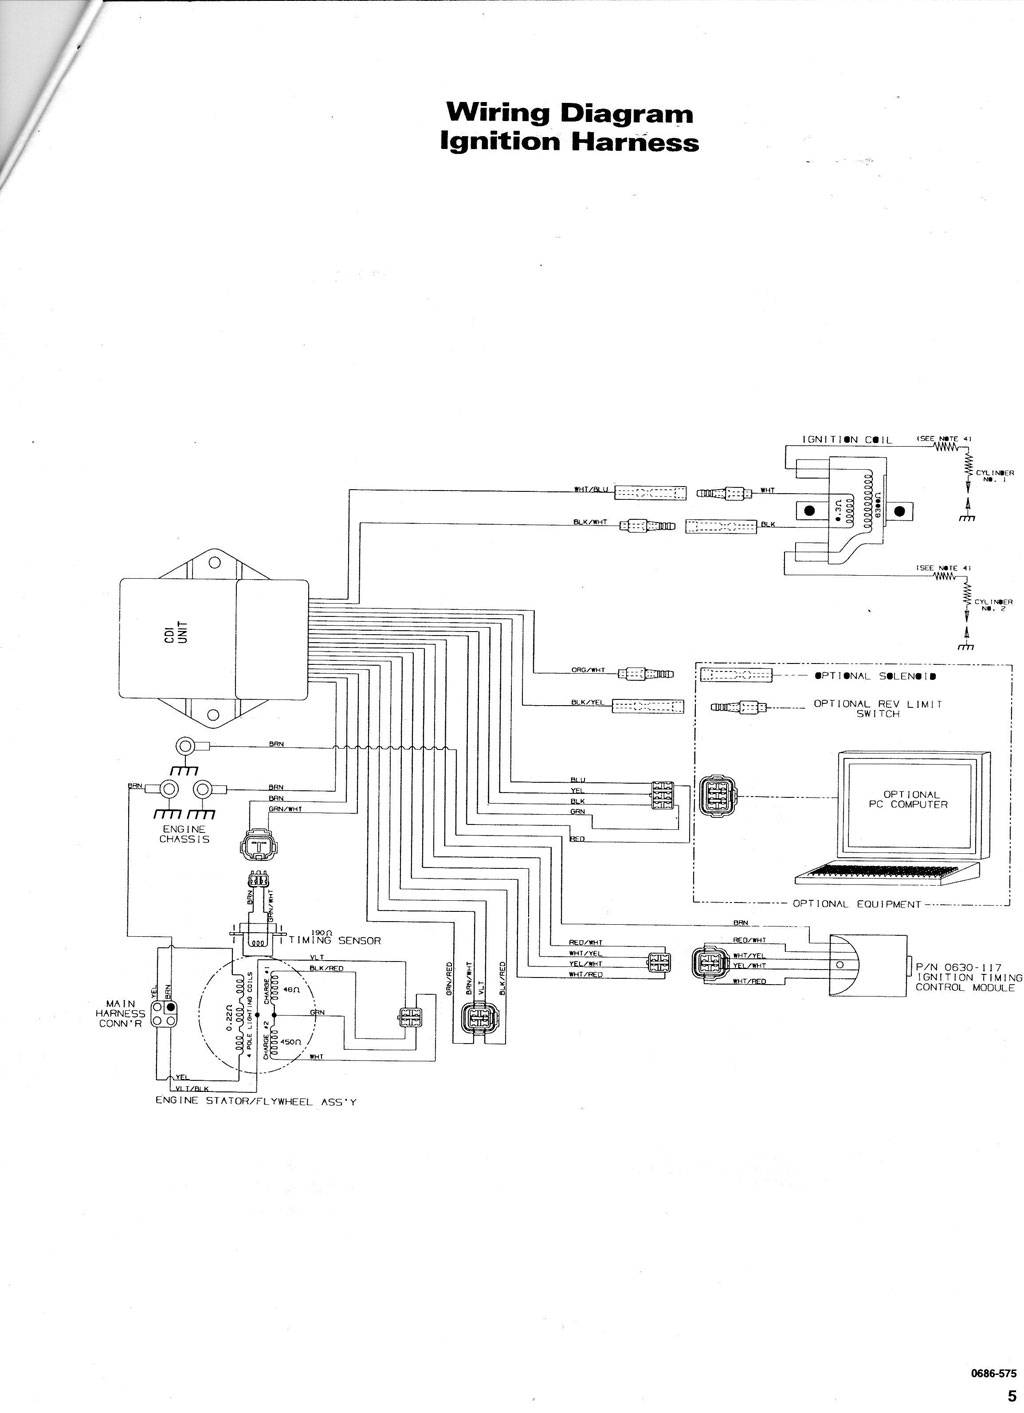 1998 Arctic Cat Wiring Diagram